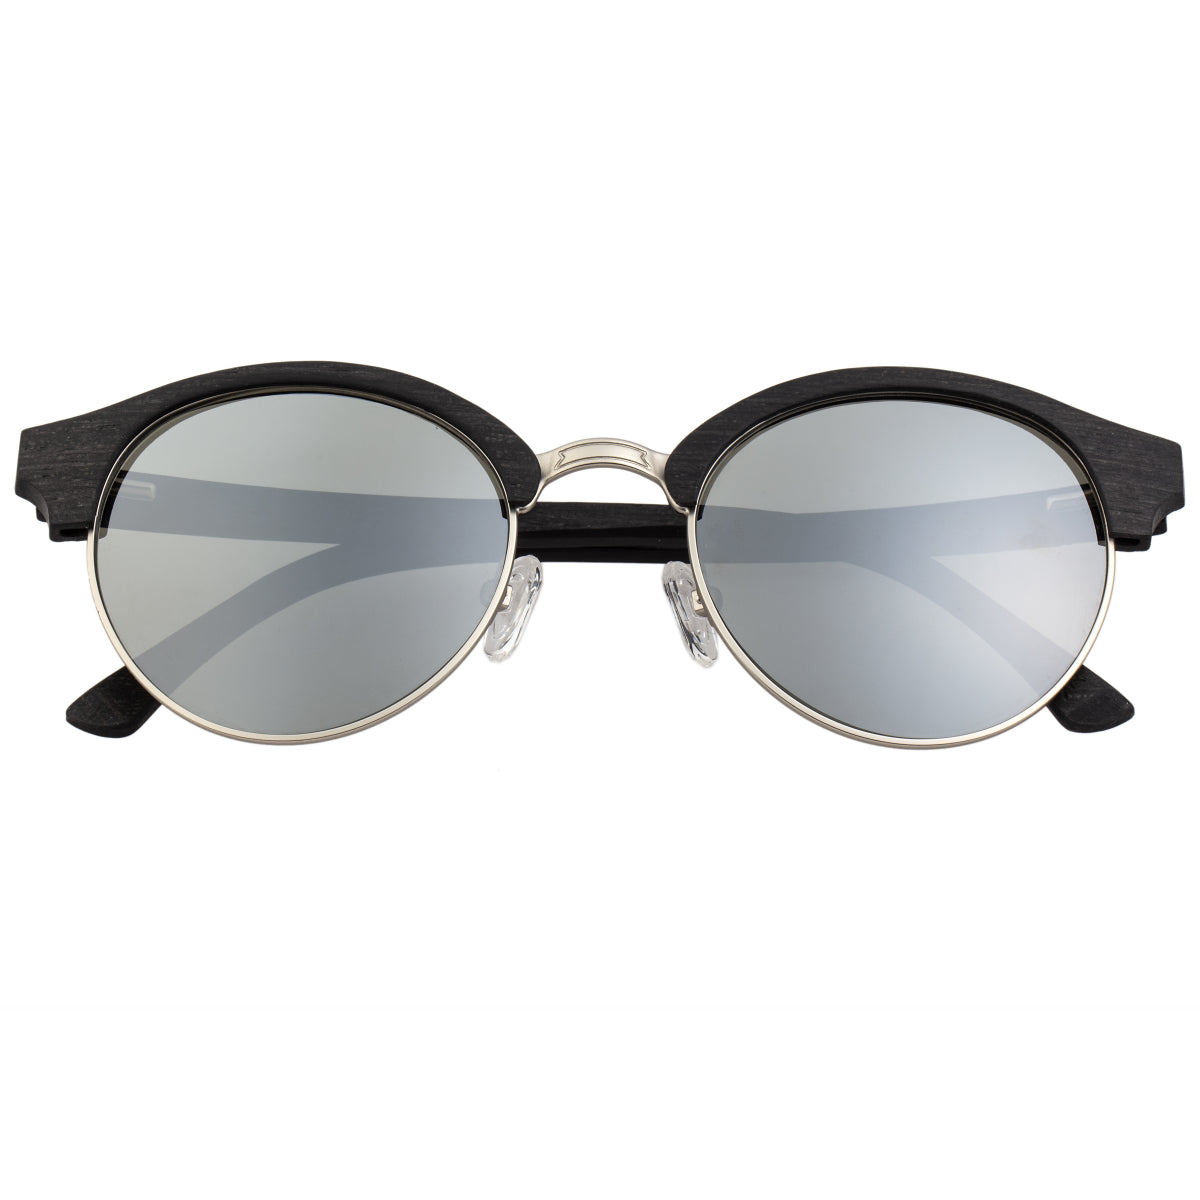 Earth Wood Misty Polarized Sunglasses - Ebony/Silver  - ESG049ES